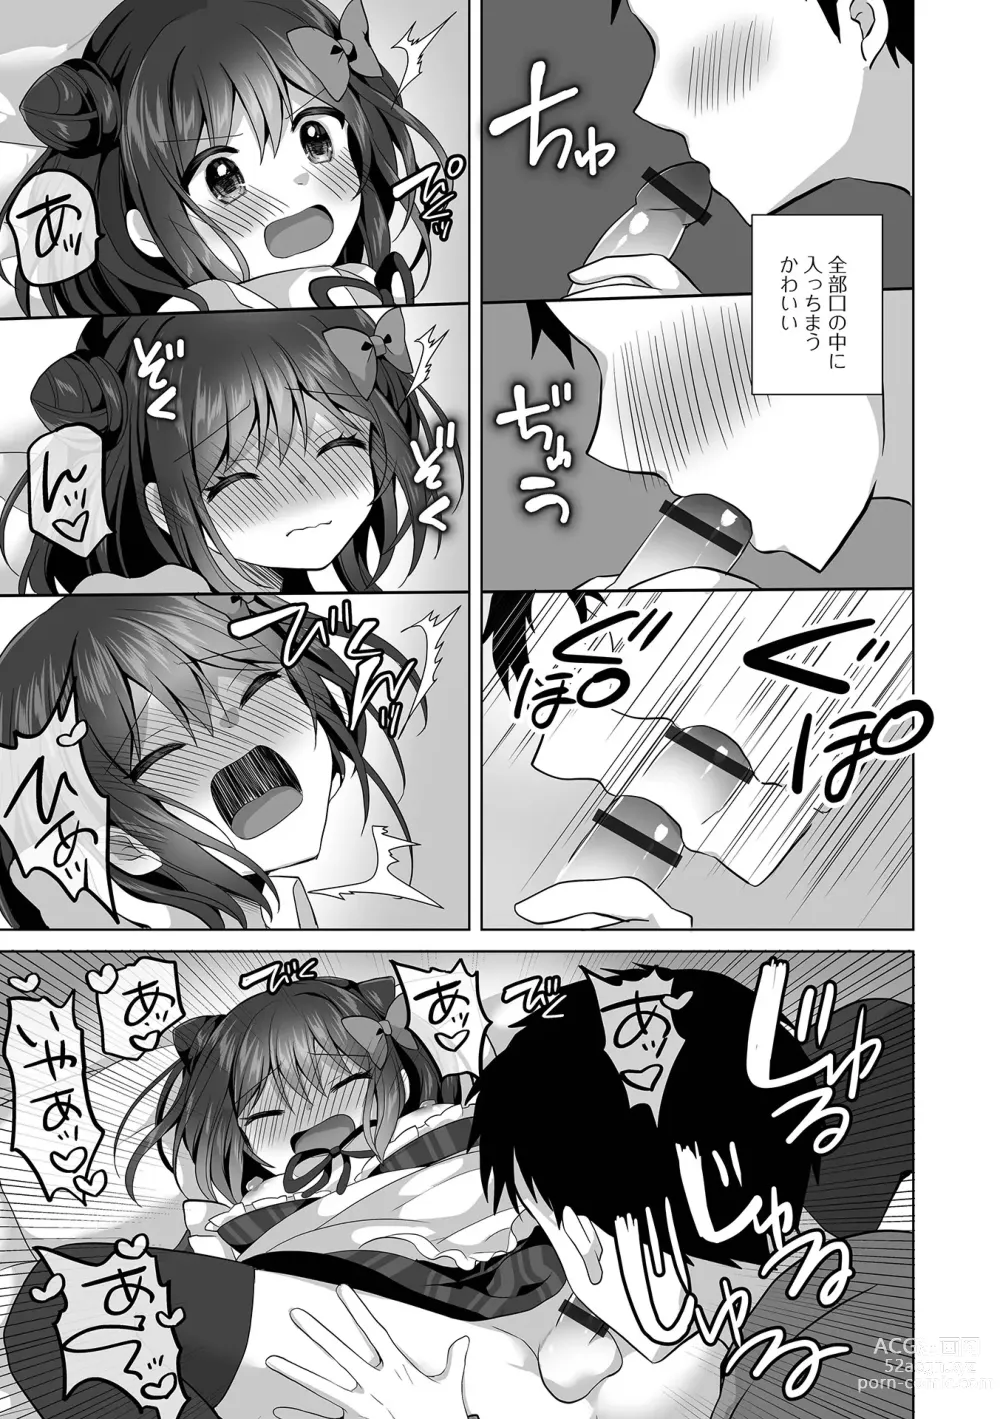 Page 11 of manga Gekkan Web Otoko no Ko-llection! S Vol. 93